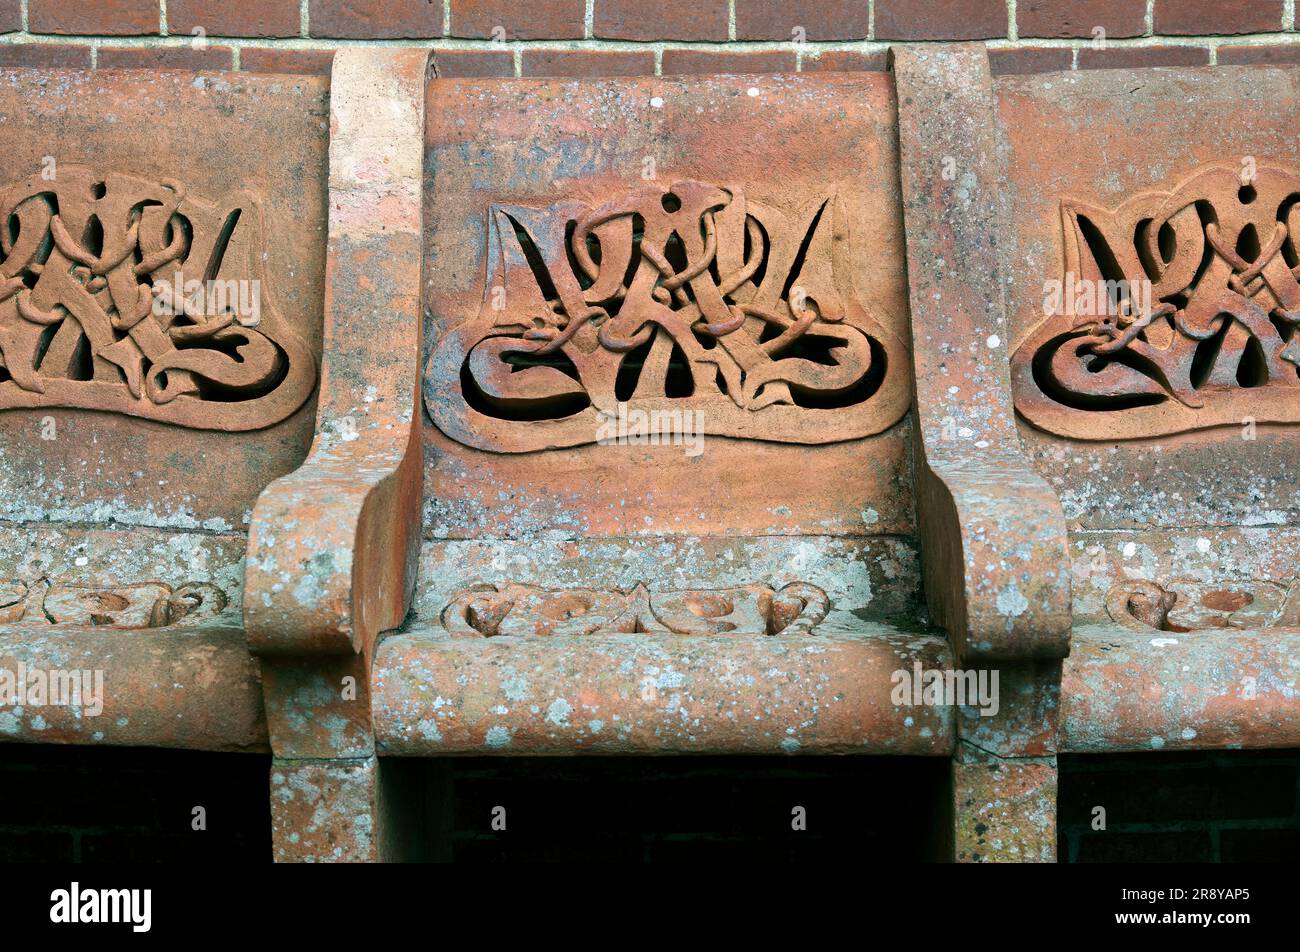 Posti a sedere all'esterno della Watts Memorial Chapel, Compton, Surrey. Con intreccio in terracotta ispirato al celtico/art nouveau (e una "W" per Watts?) Foto Stock